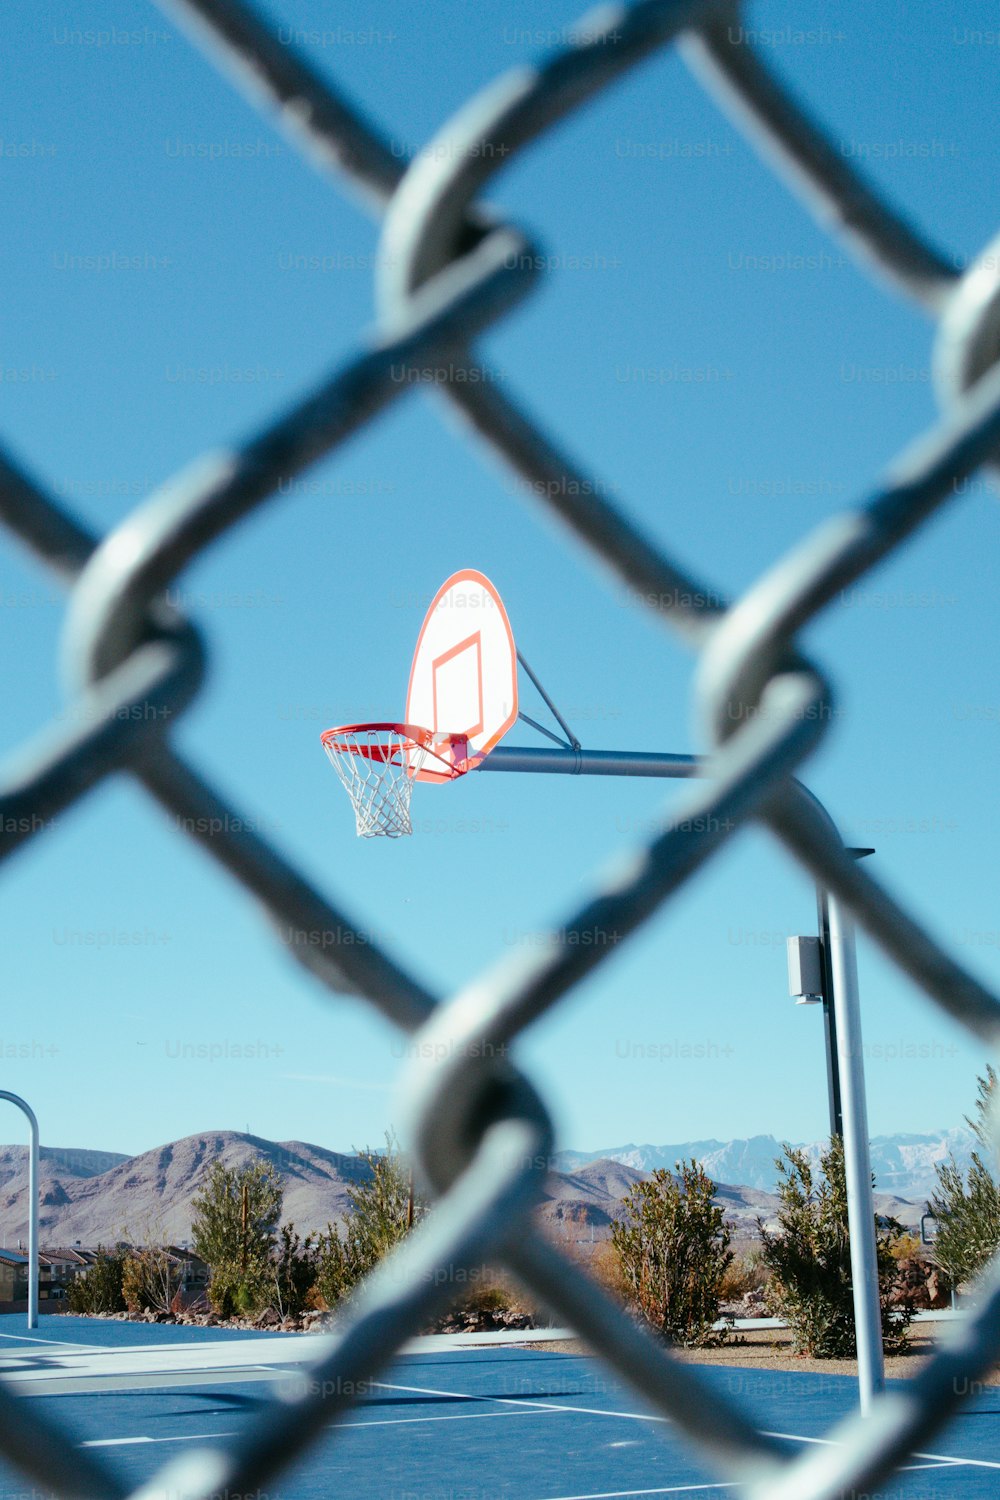 金網のフェンス越しに見えるバスケットボールのフープ